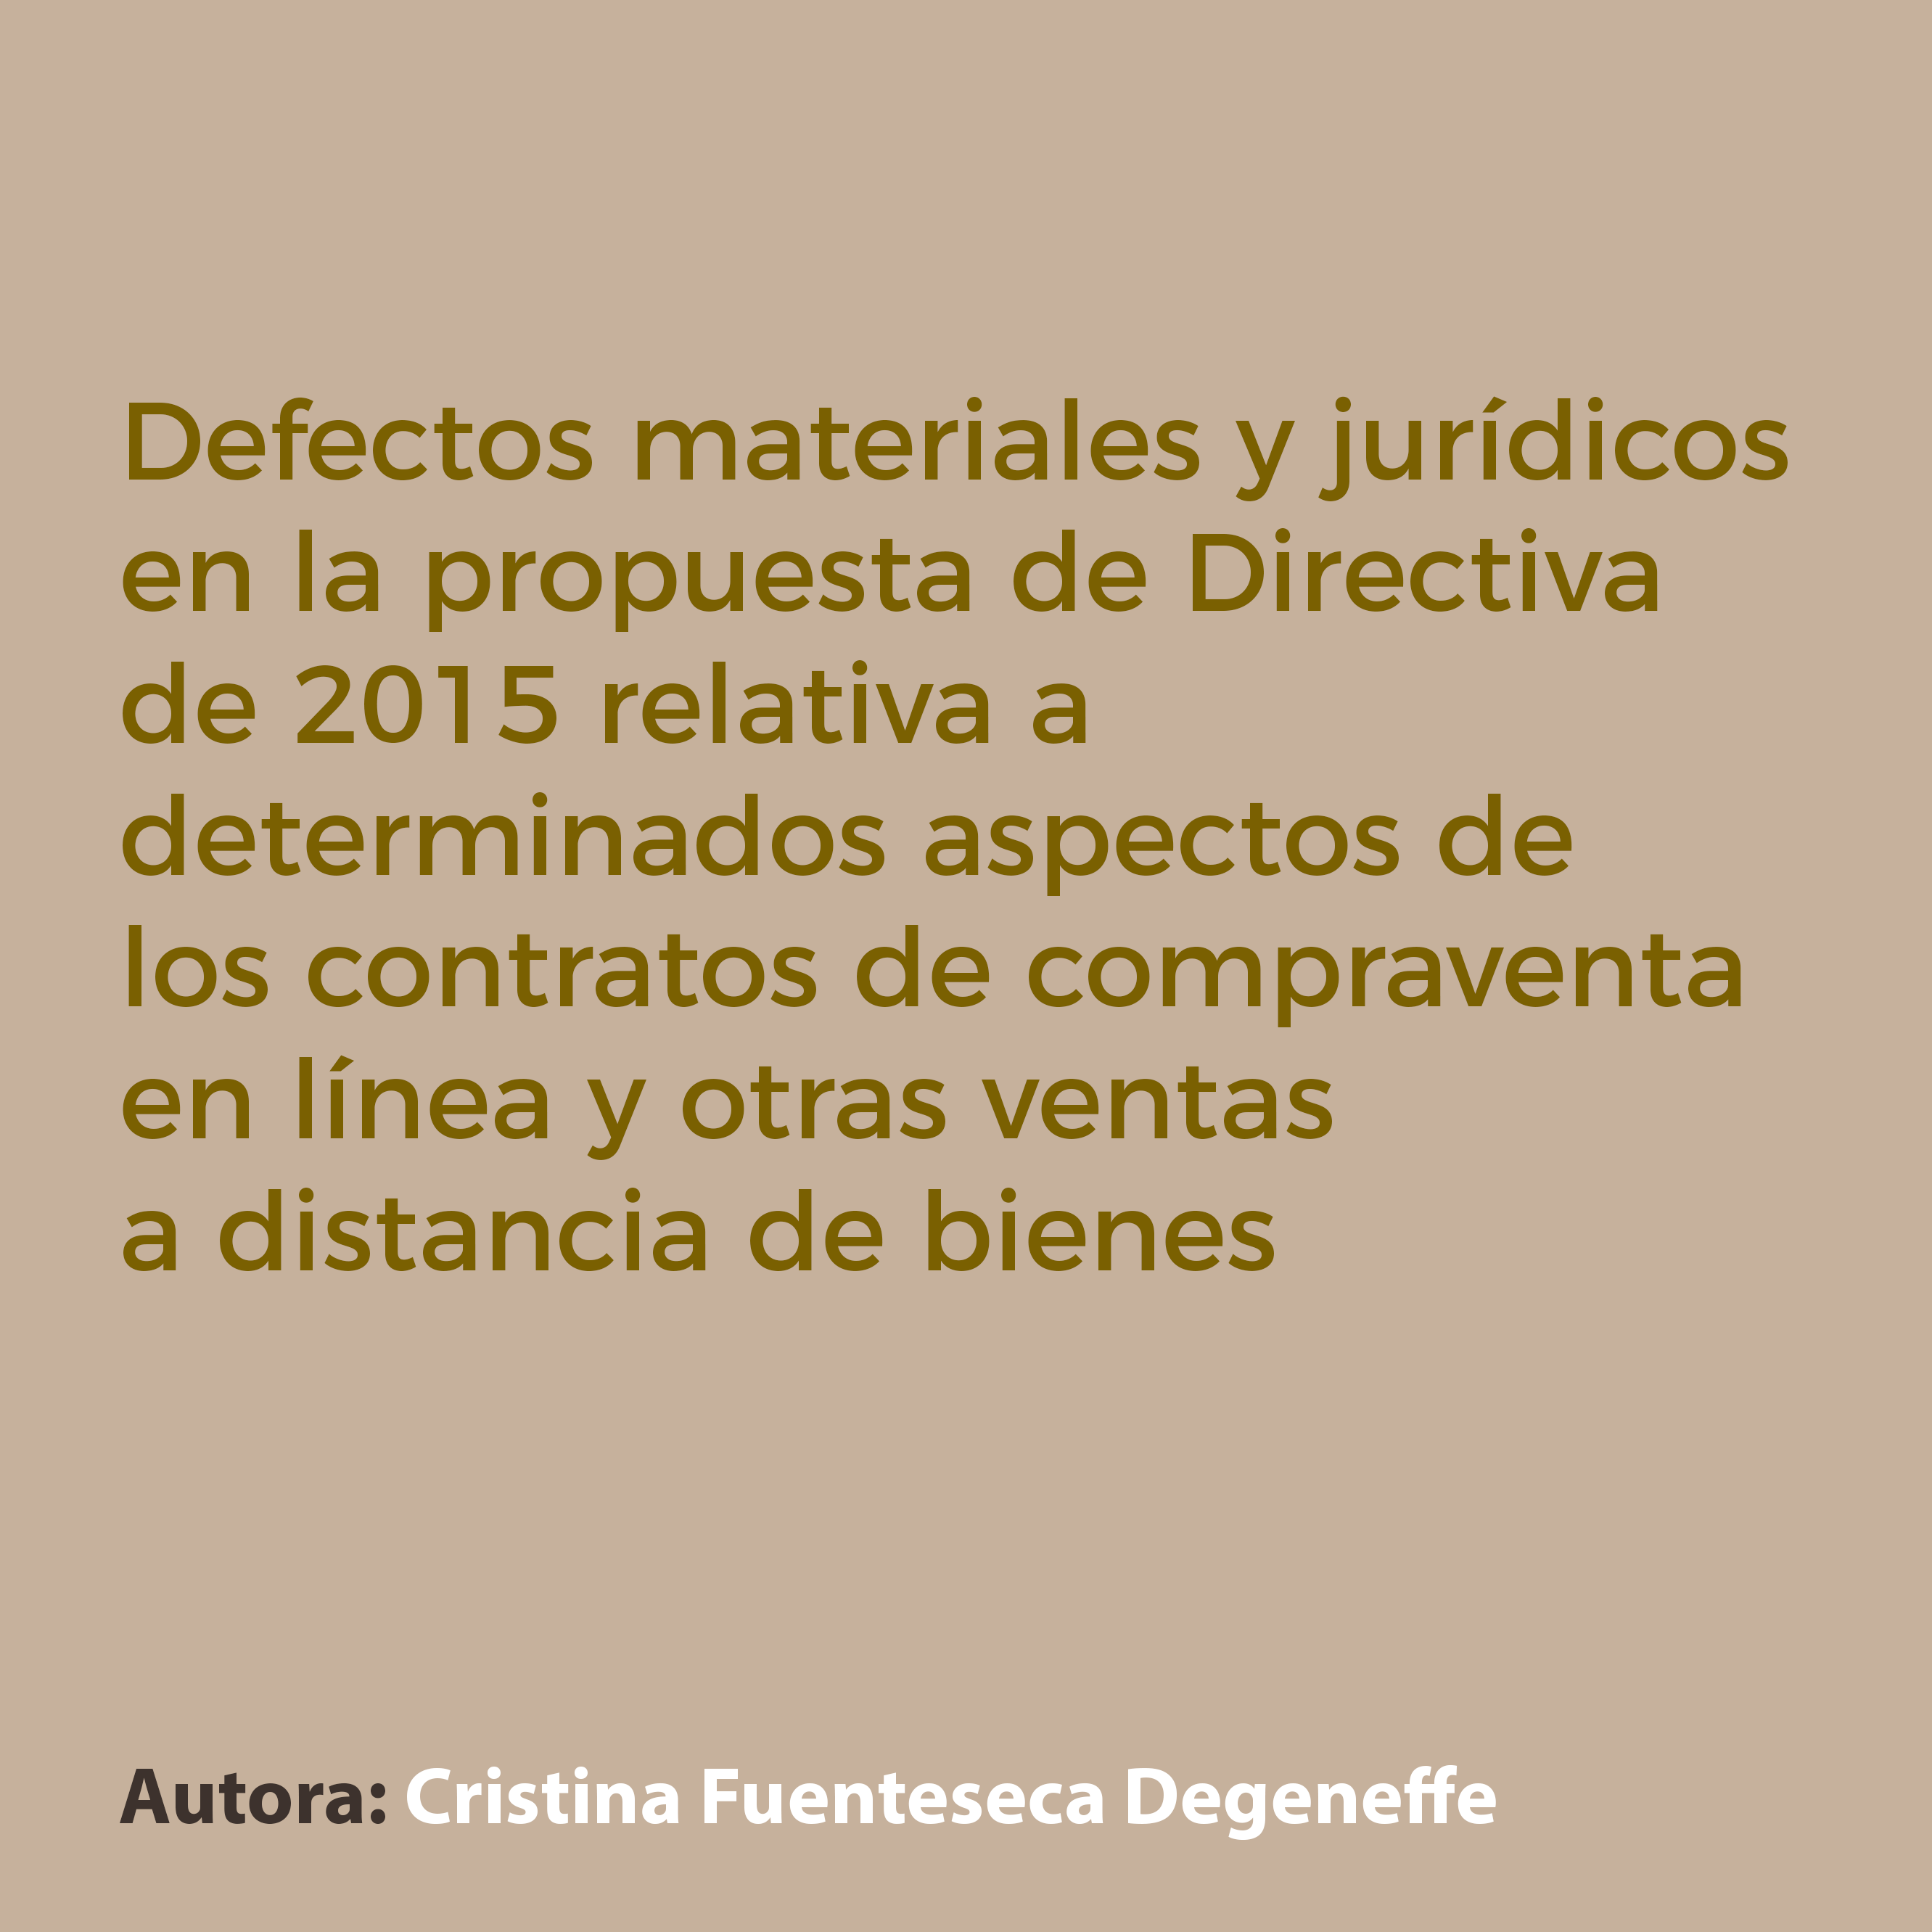 Defectos materiales y jurídicos en la propuesta de Directiva de 2015 relativa a determinados aspectos de los contratos de compraventa en línea y otras ventas a distancia de bienes